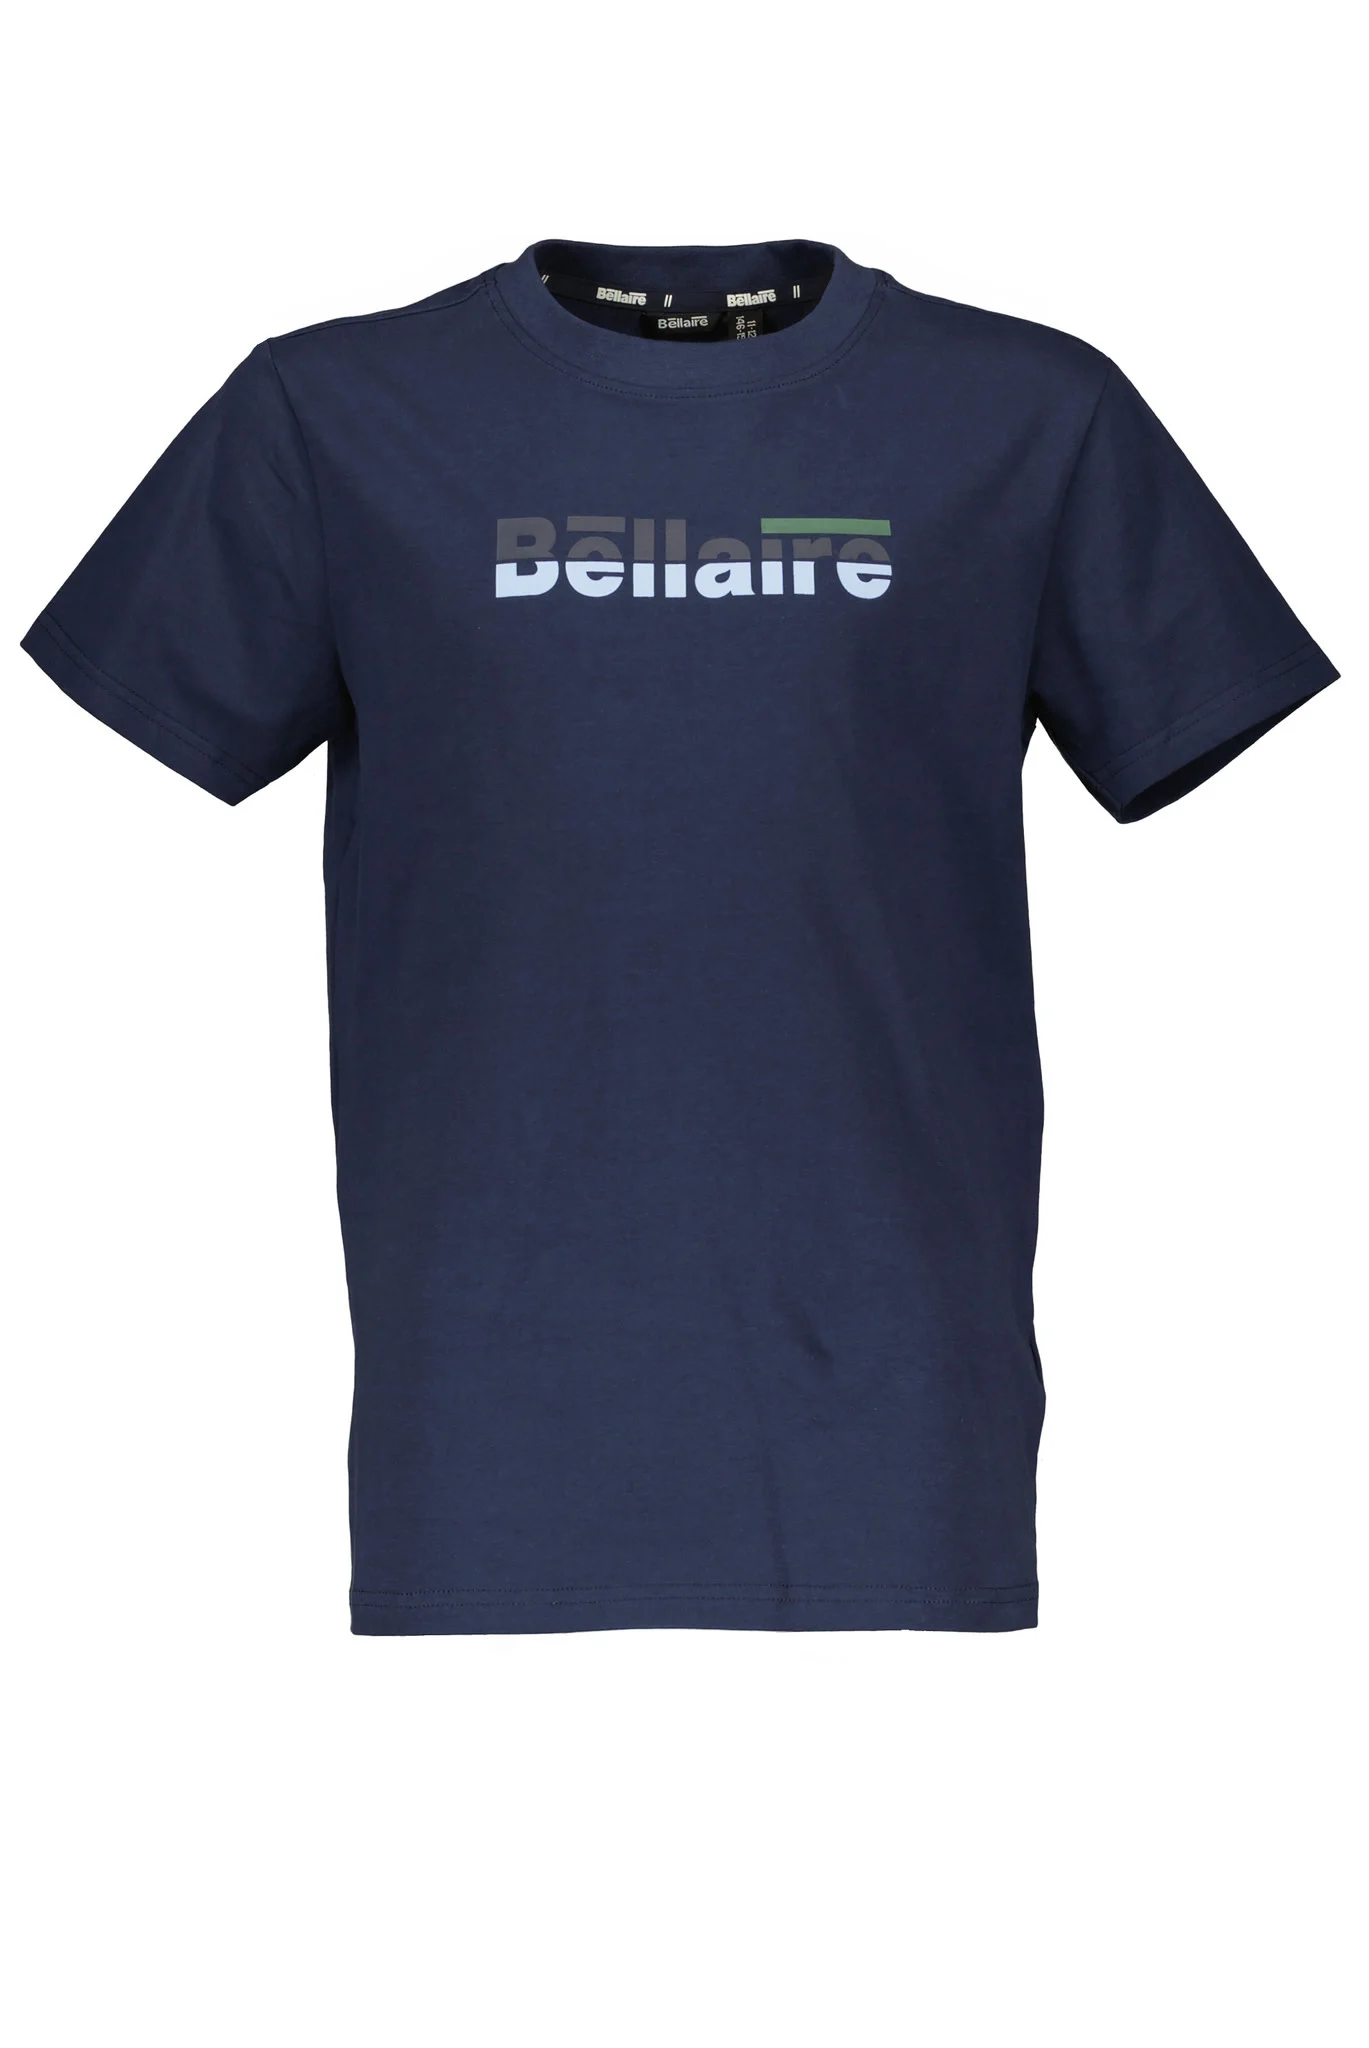 Afbeelding van Bellaire Jongens t-shirt met logo navy blazer